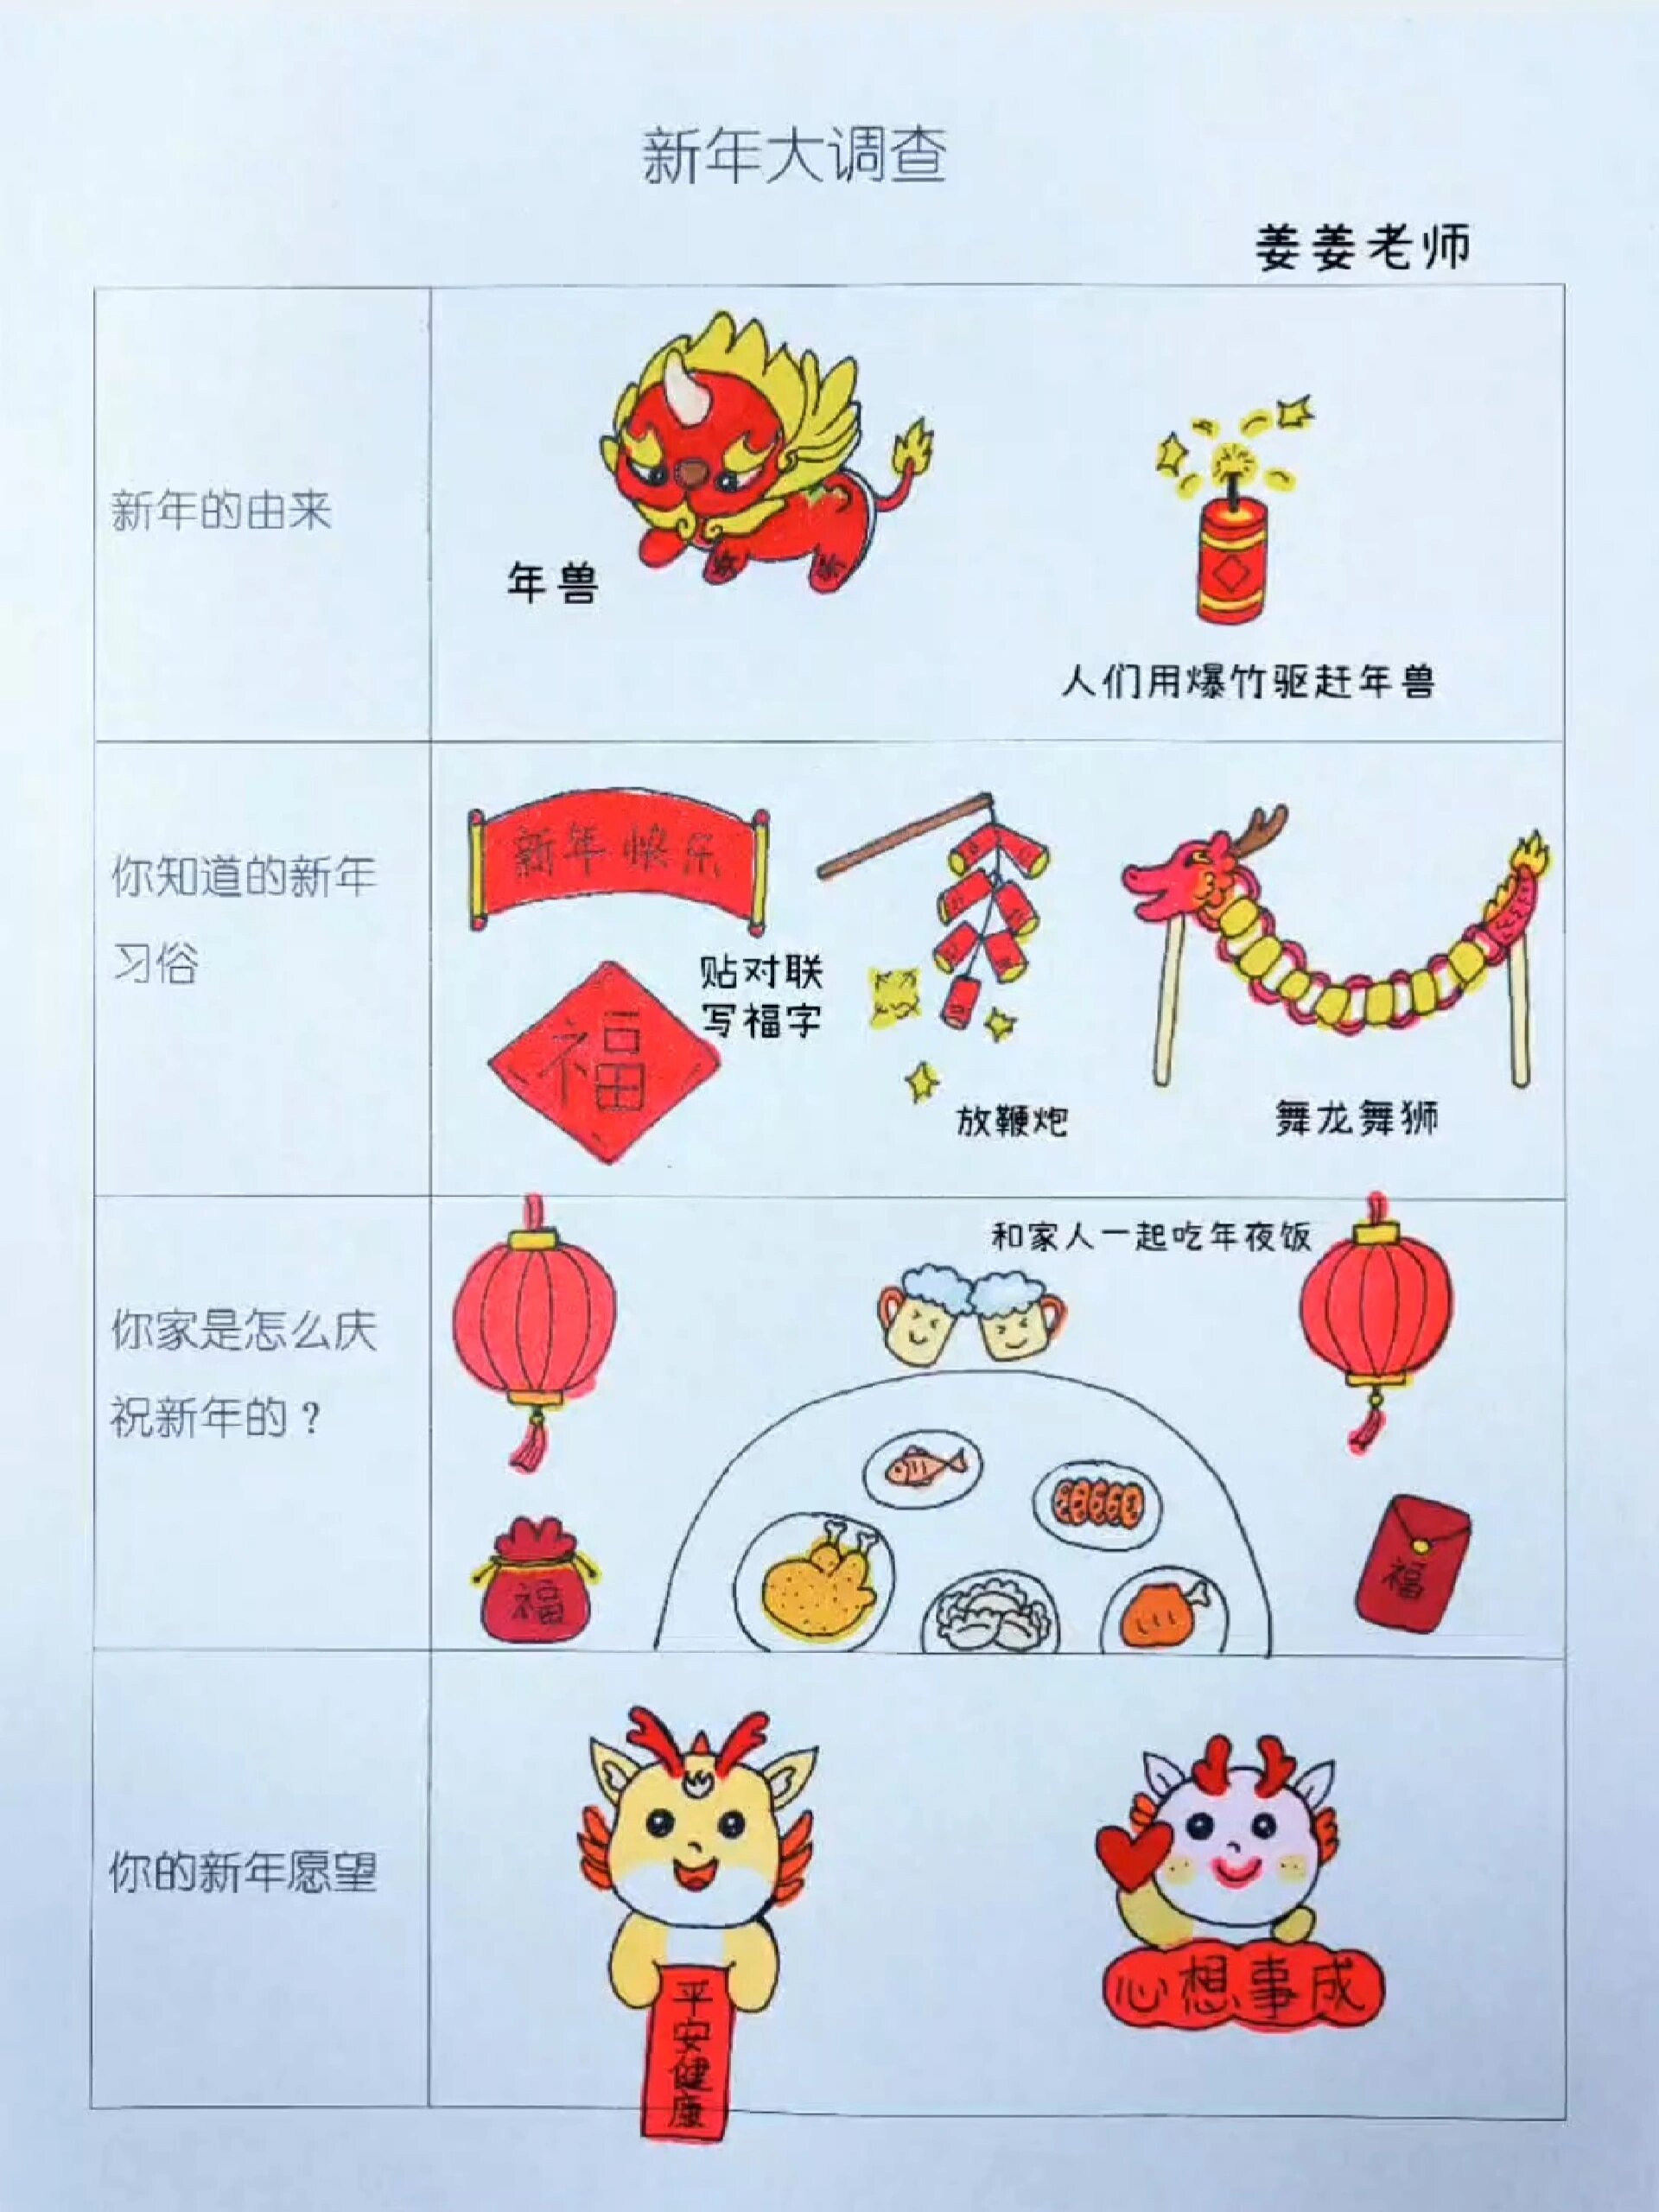 春节传统节日调查表图片